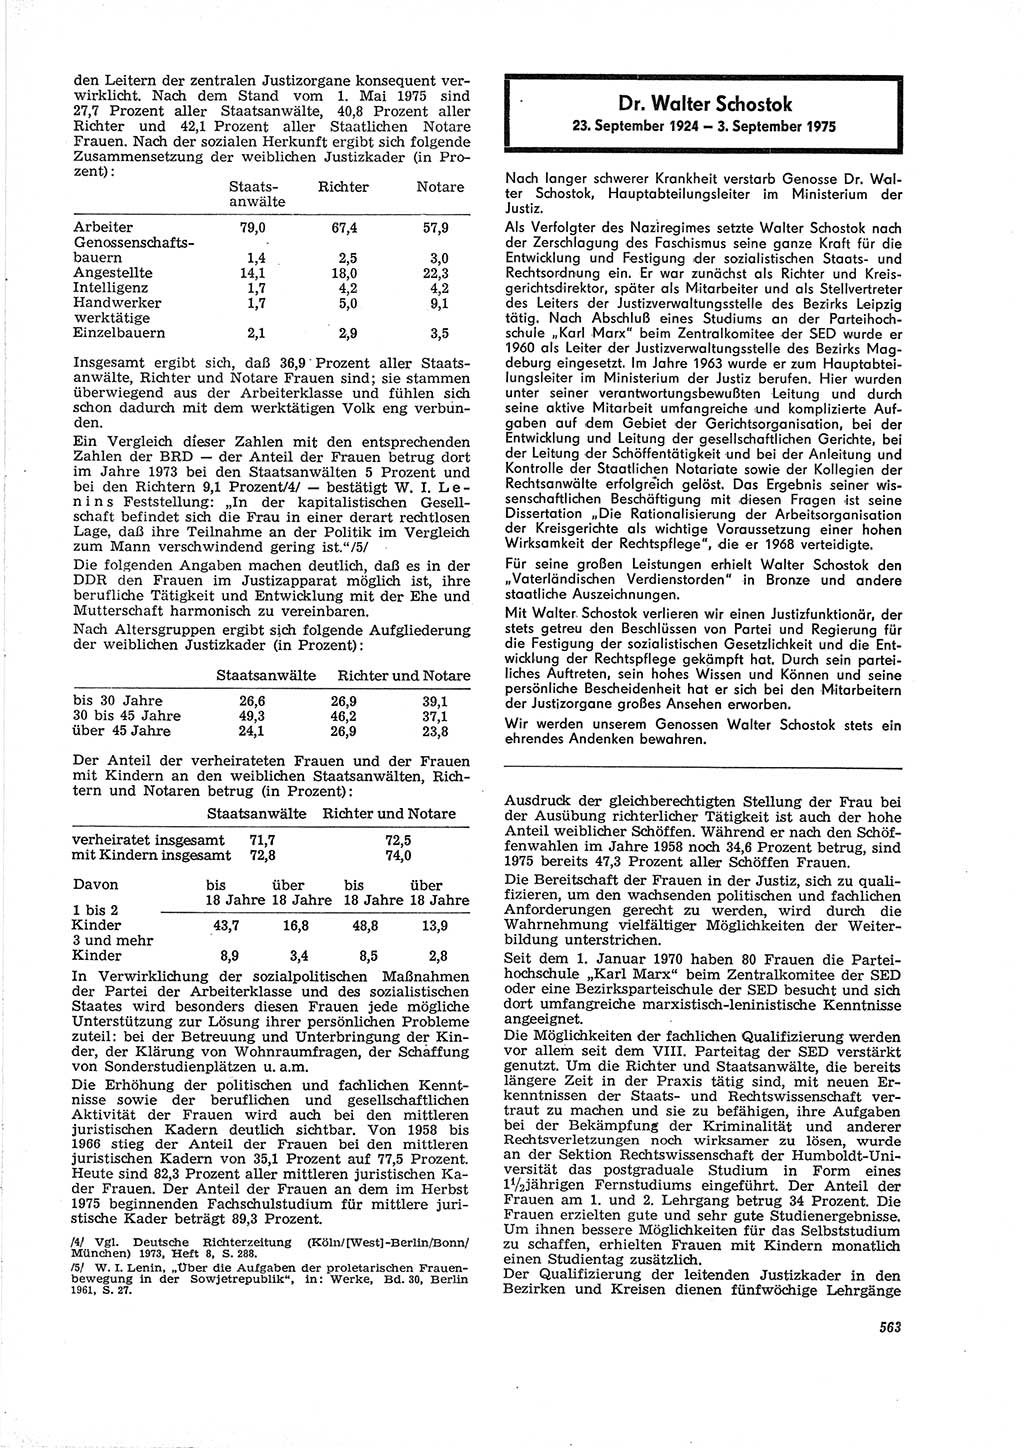 Neue Justiz (NJ), Zeitschrift für Recht und Rechtswissenschaft [Deutsche Demokratische Republik (DDR)], 29. Jahrgang 1975, Seite 563 (NJ DDR 1975, S. 563)